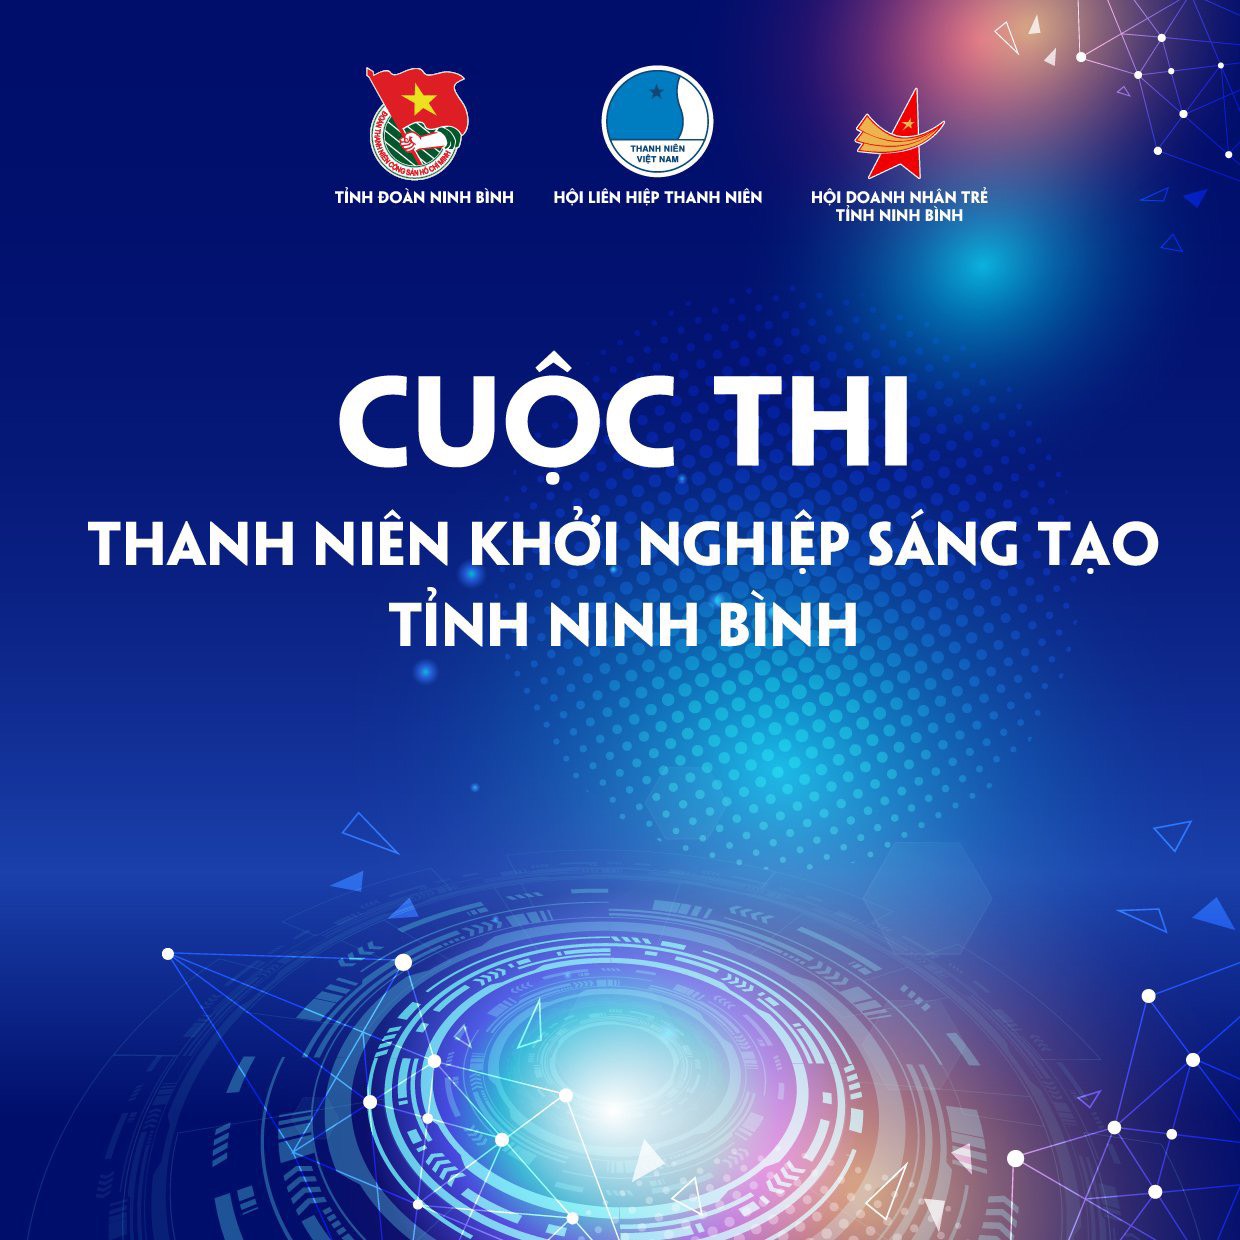 Cuộc thi thanh niên khởi nghiệp sáng tạo tỉnh Ninh Bình